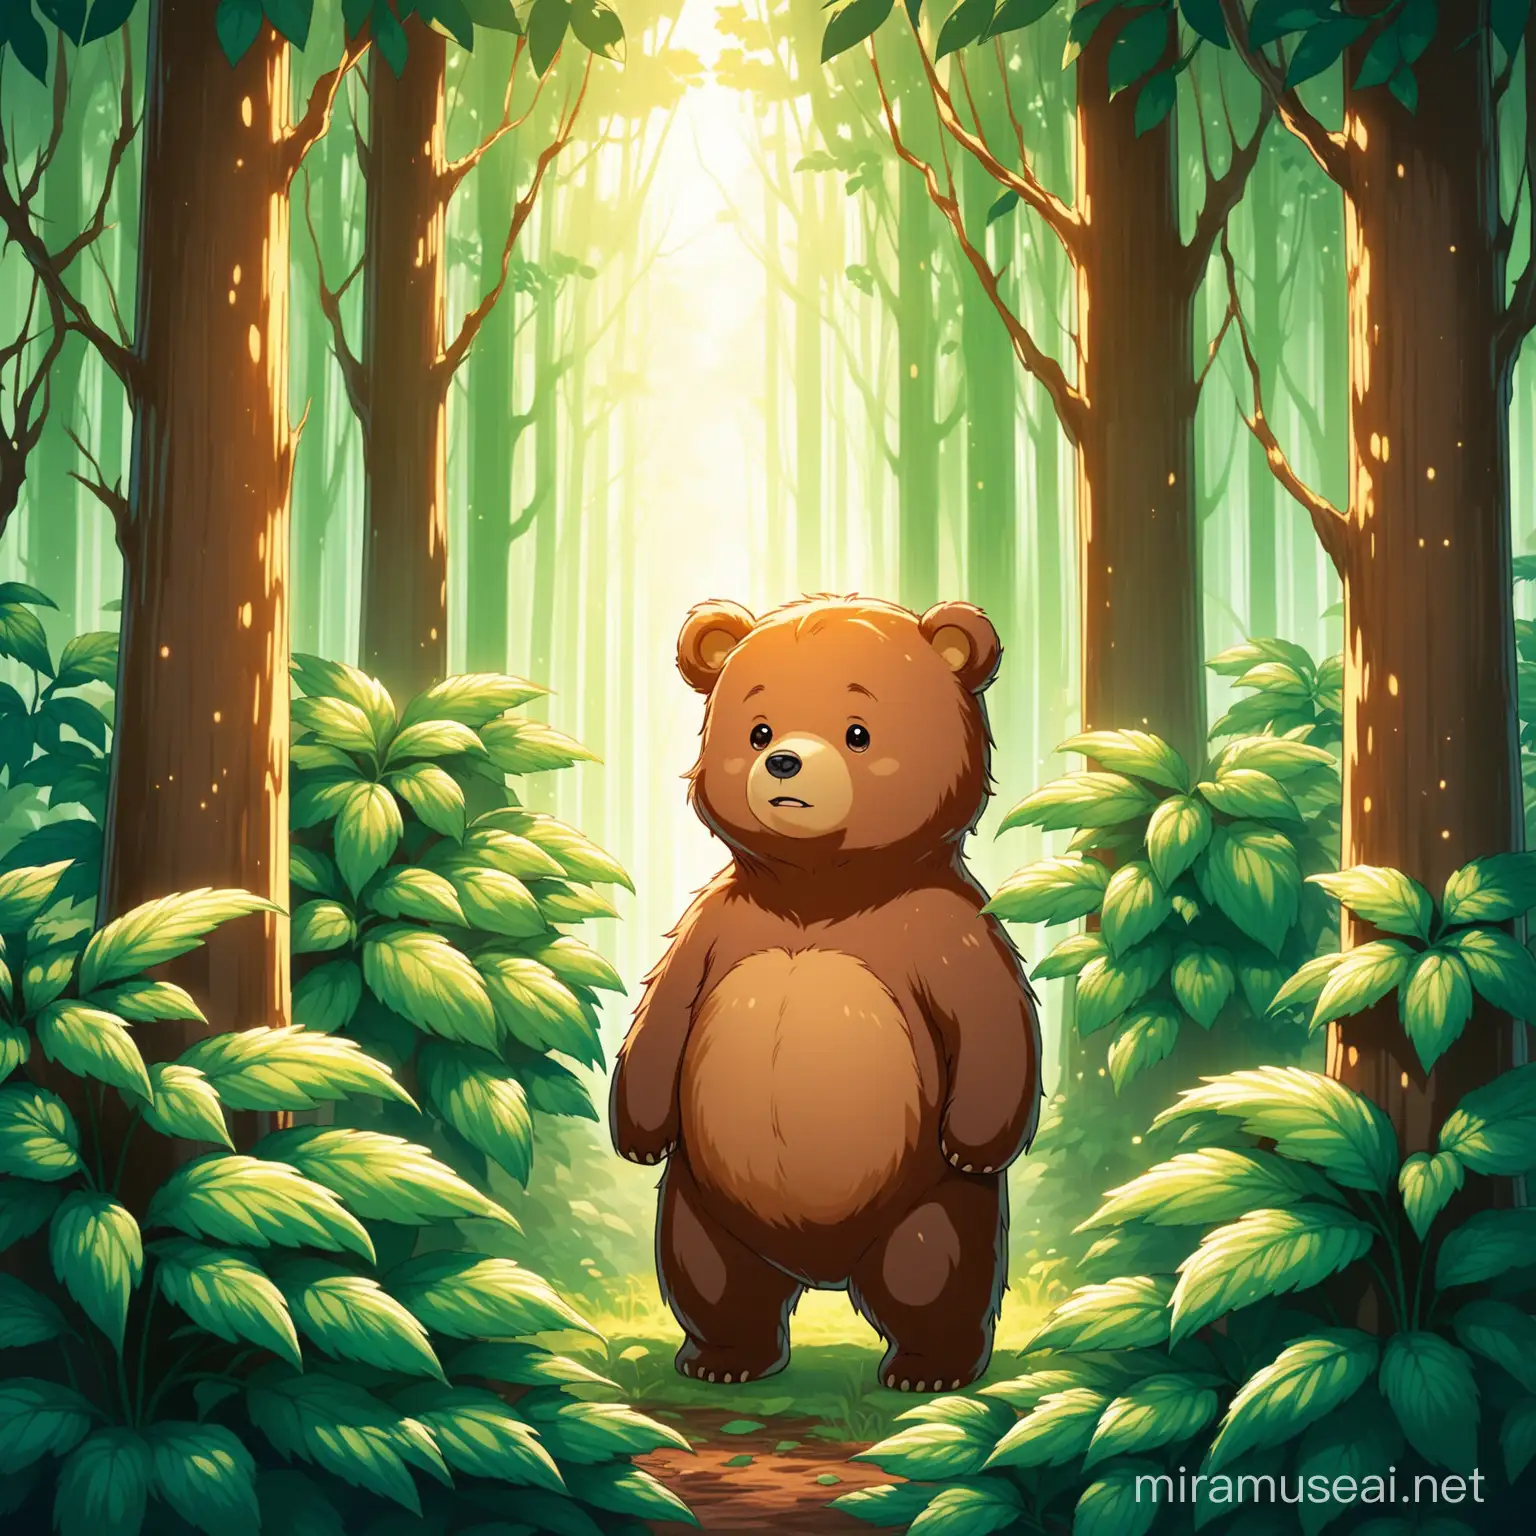 1. 小熊醒来，发现自己在一片陌生的森林中，四周都是他从未见过的树木和植物，他感到迷茫和害怕。